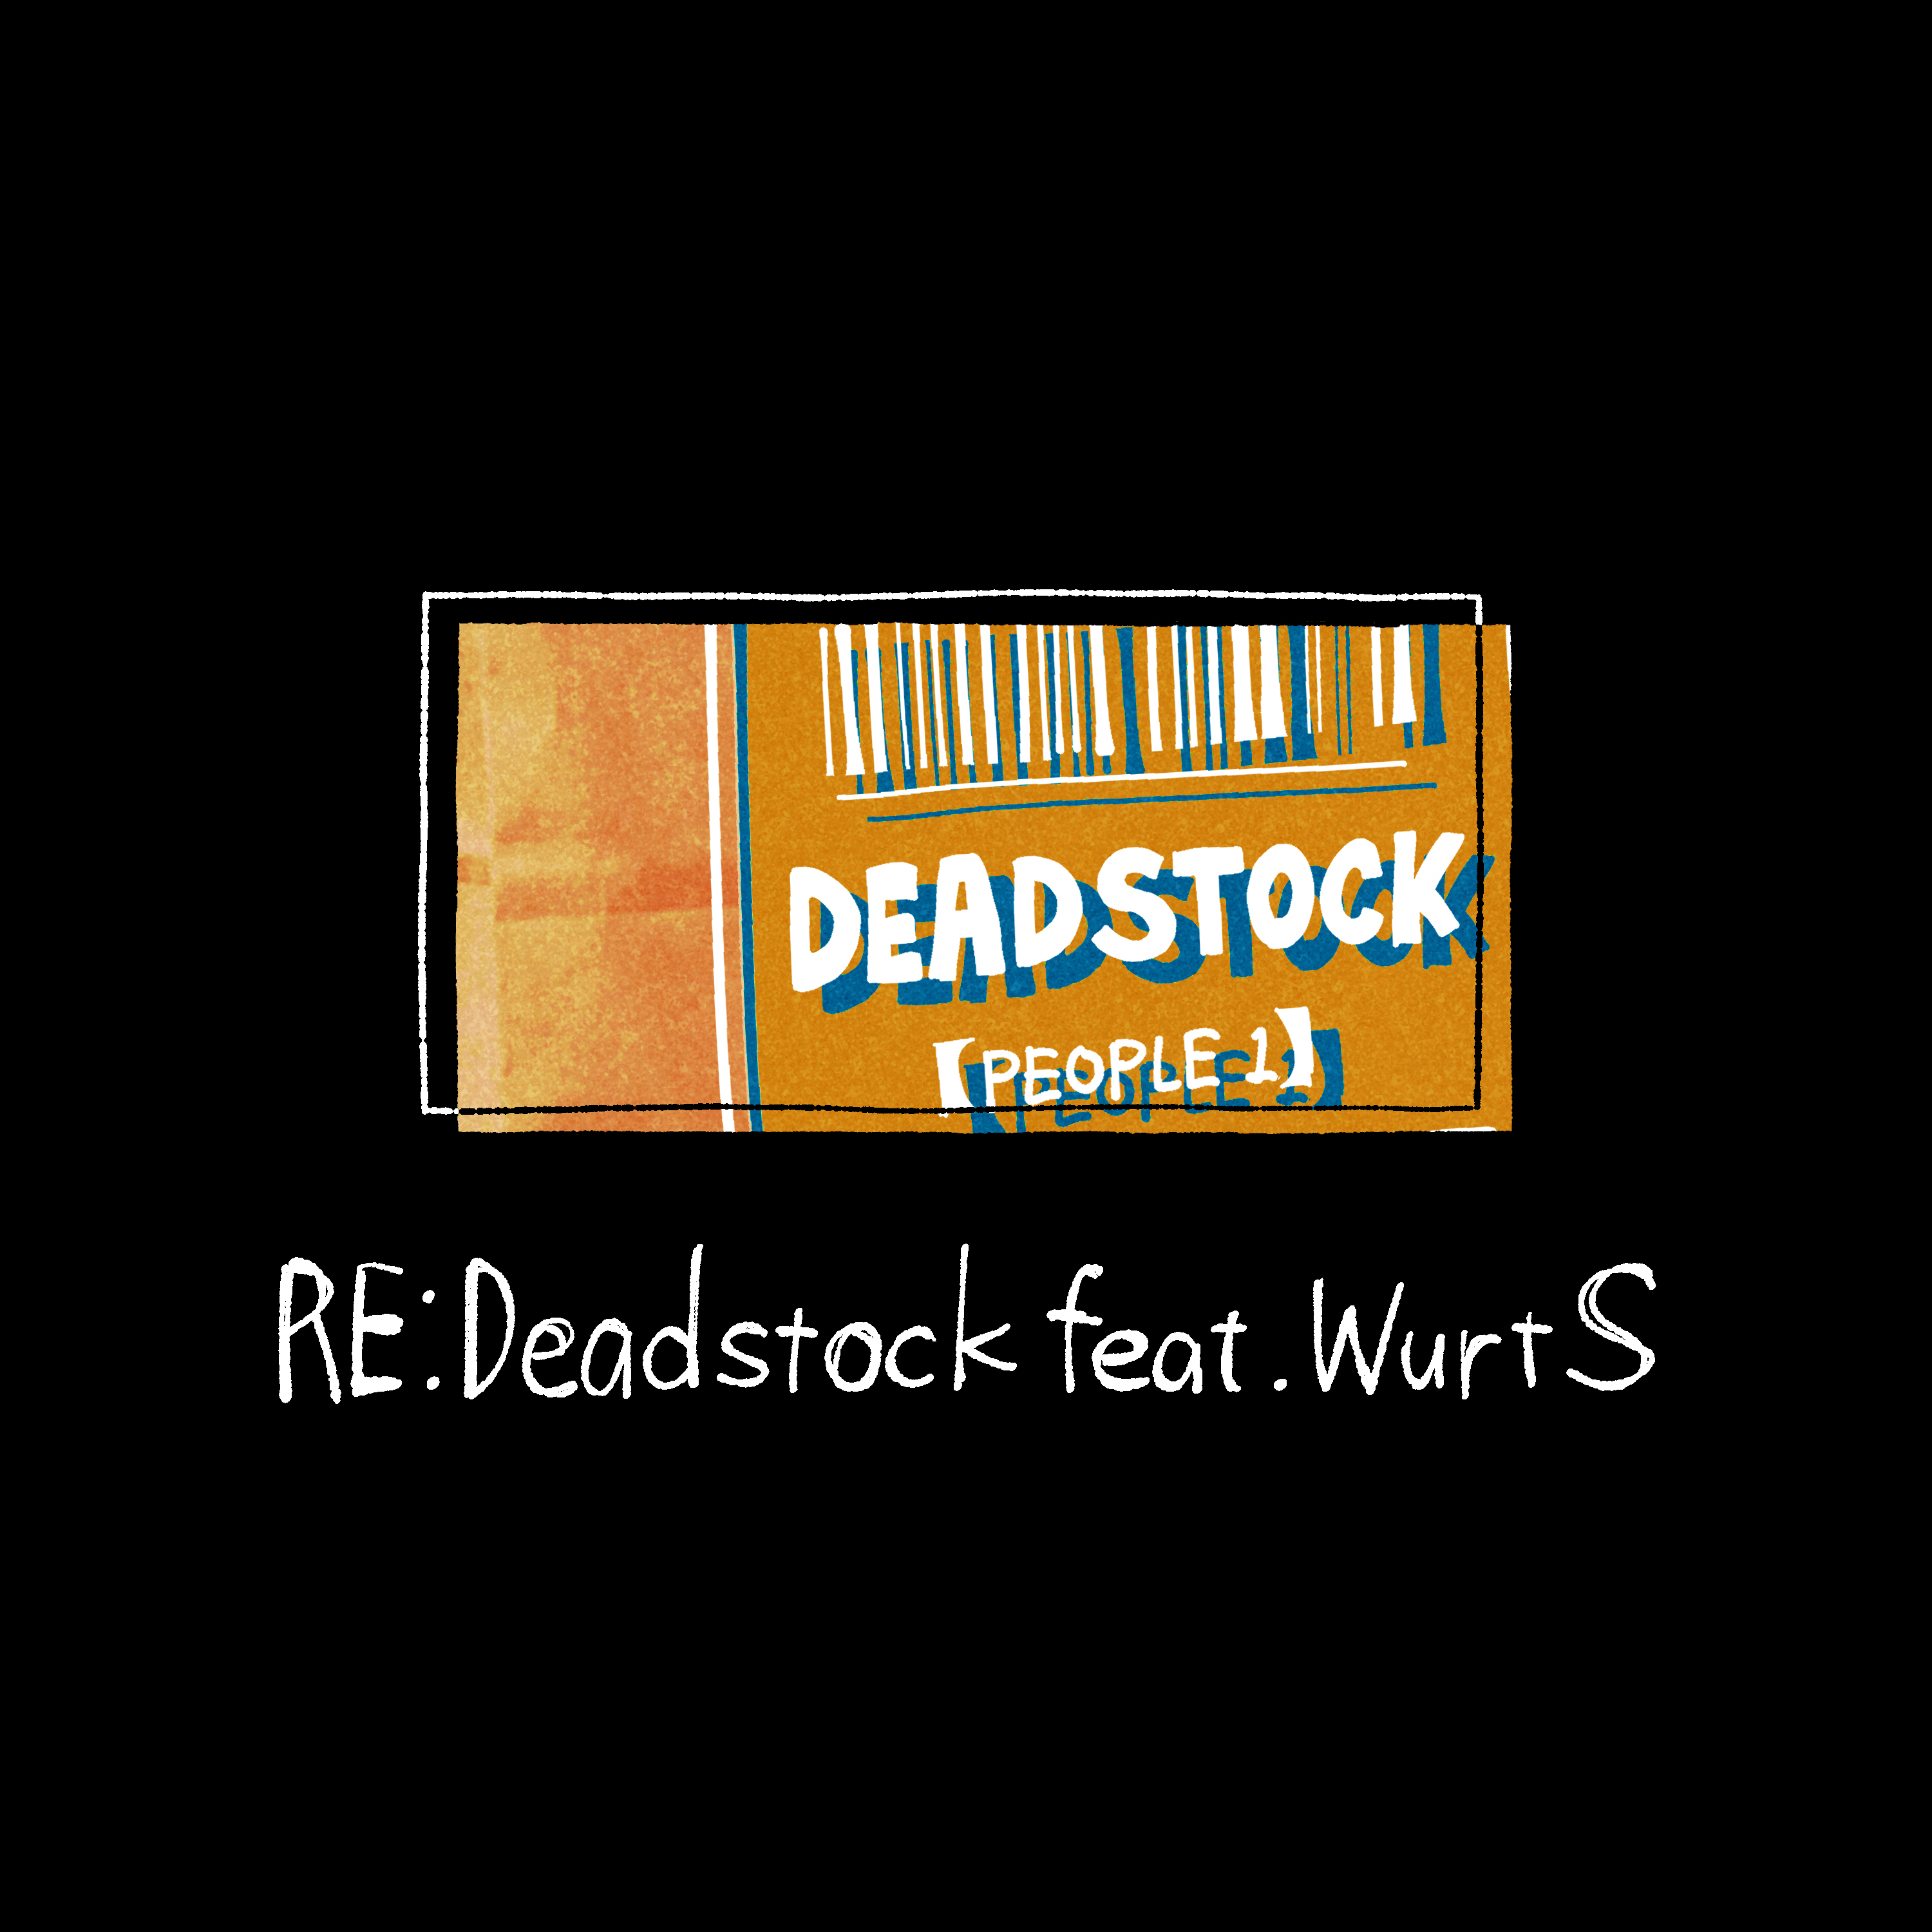 Re:Deadstock feat. WurtS